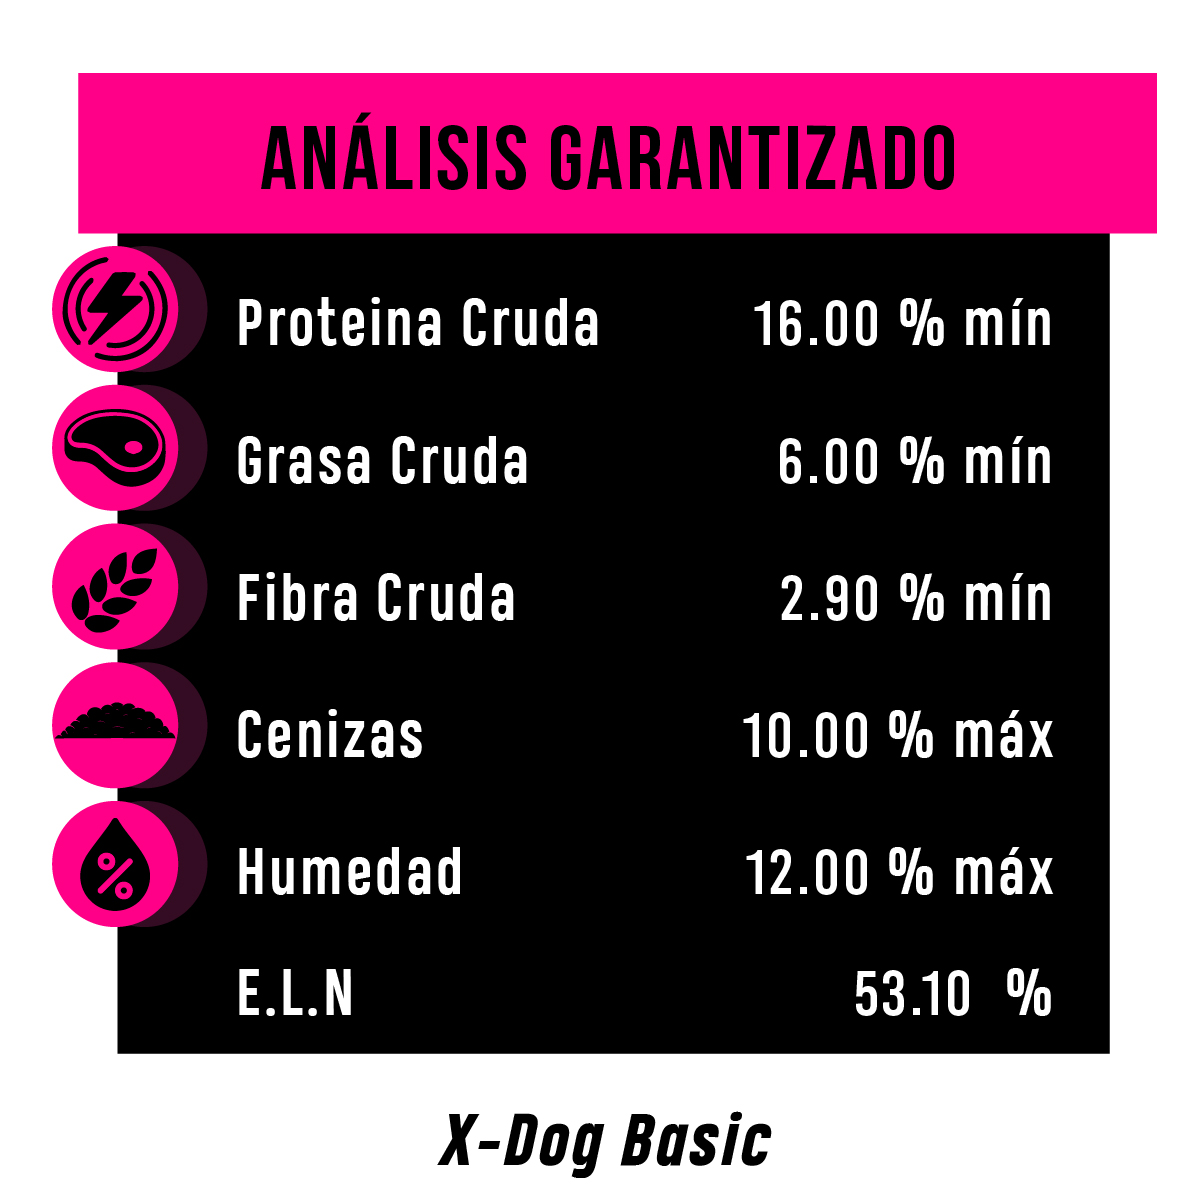 x-dog basic